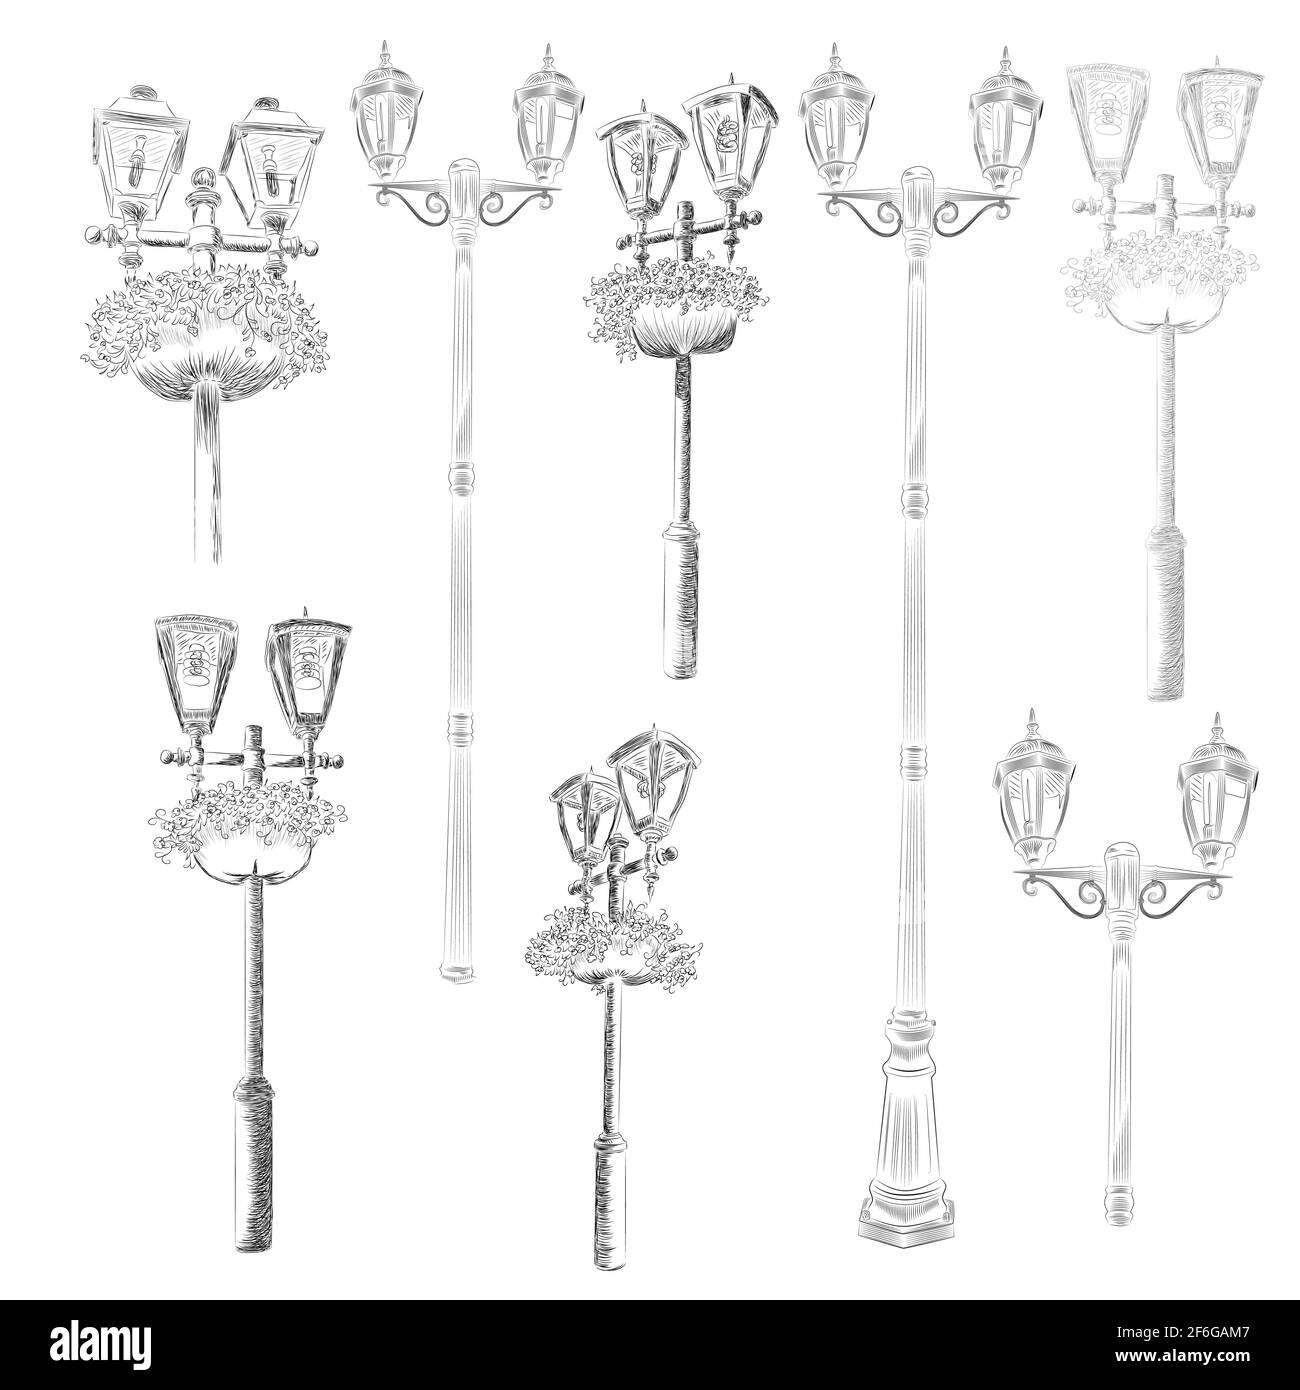 Lampadaire de rue, dessiné à la main, dessin noir et blanc avec fleurs  Image Vectorielle Stock - Alamy